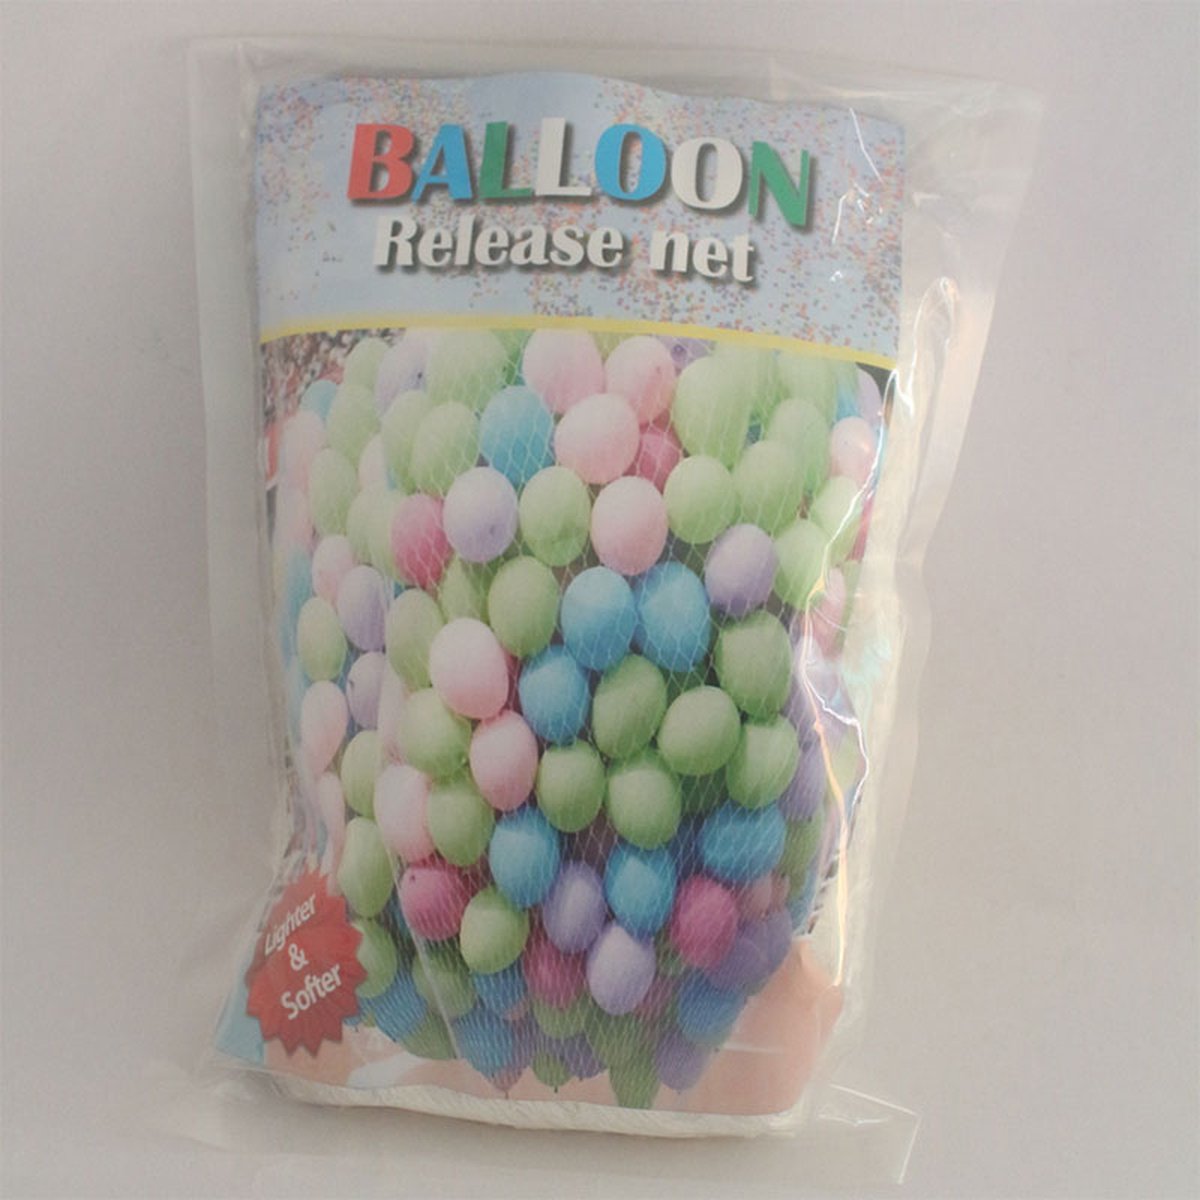 Wefiesta - Ballon release net (500 ballonnen) - We Fiesta